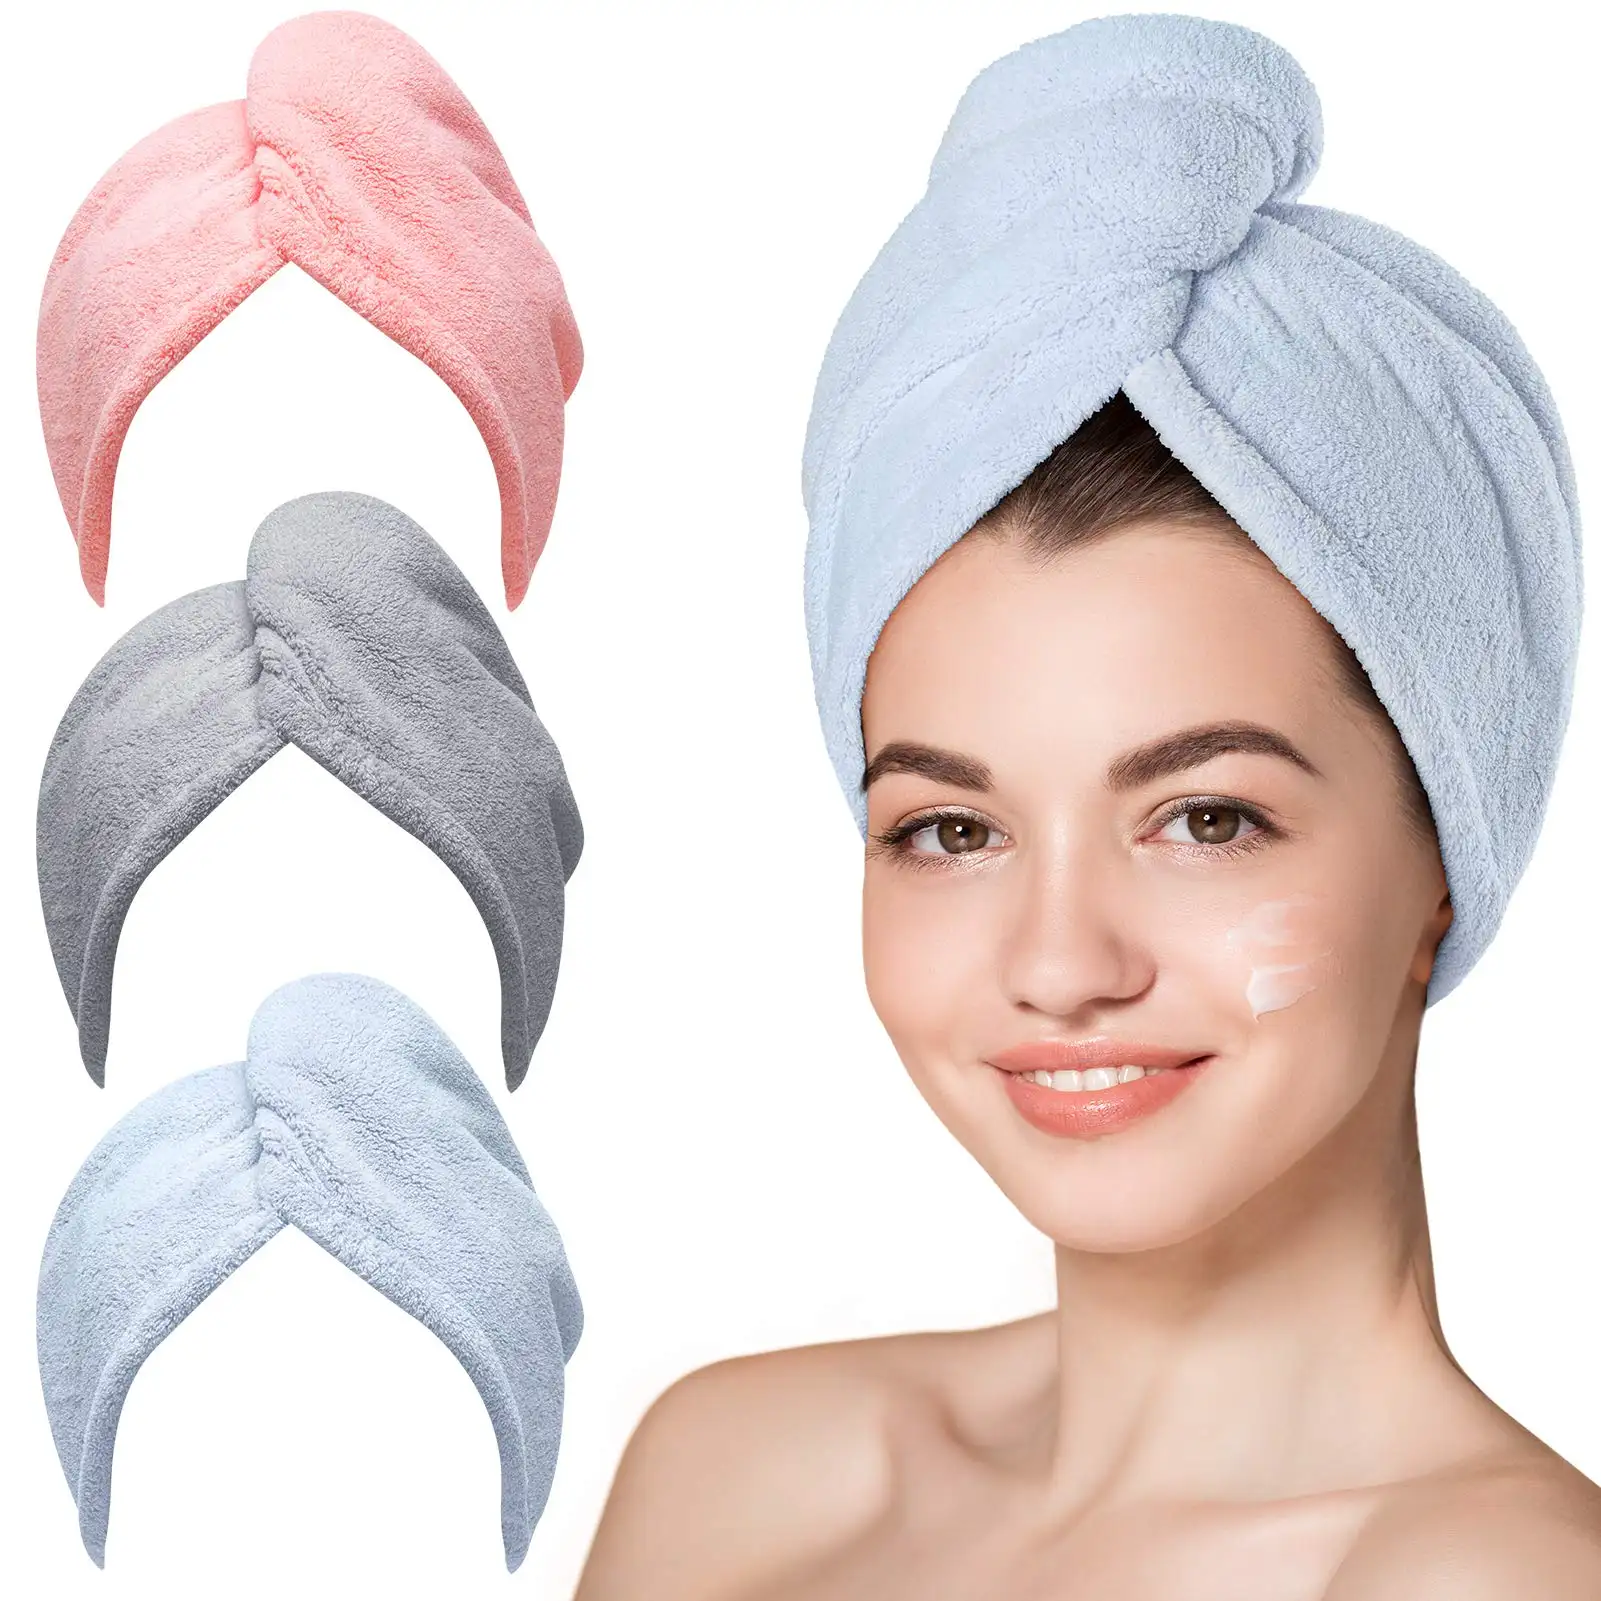 SenQi fournit une serviette pour cheveux en microfibre, 3 paquets de Turbans pour cheveux mouillés, serviettes enveloppantes pour cheveux bouclés femmes Anti frisottis